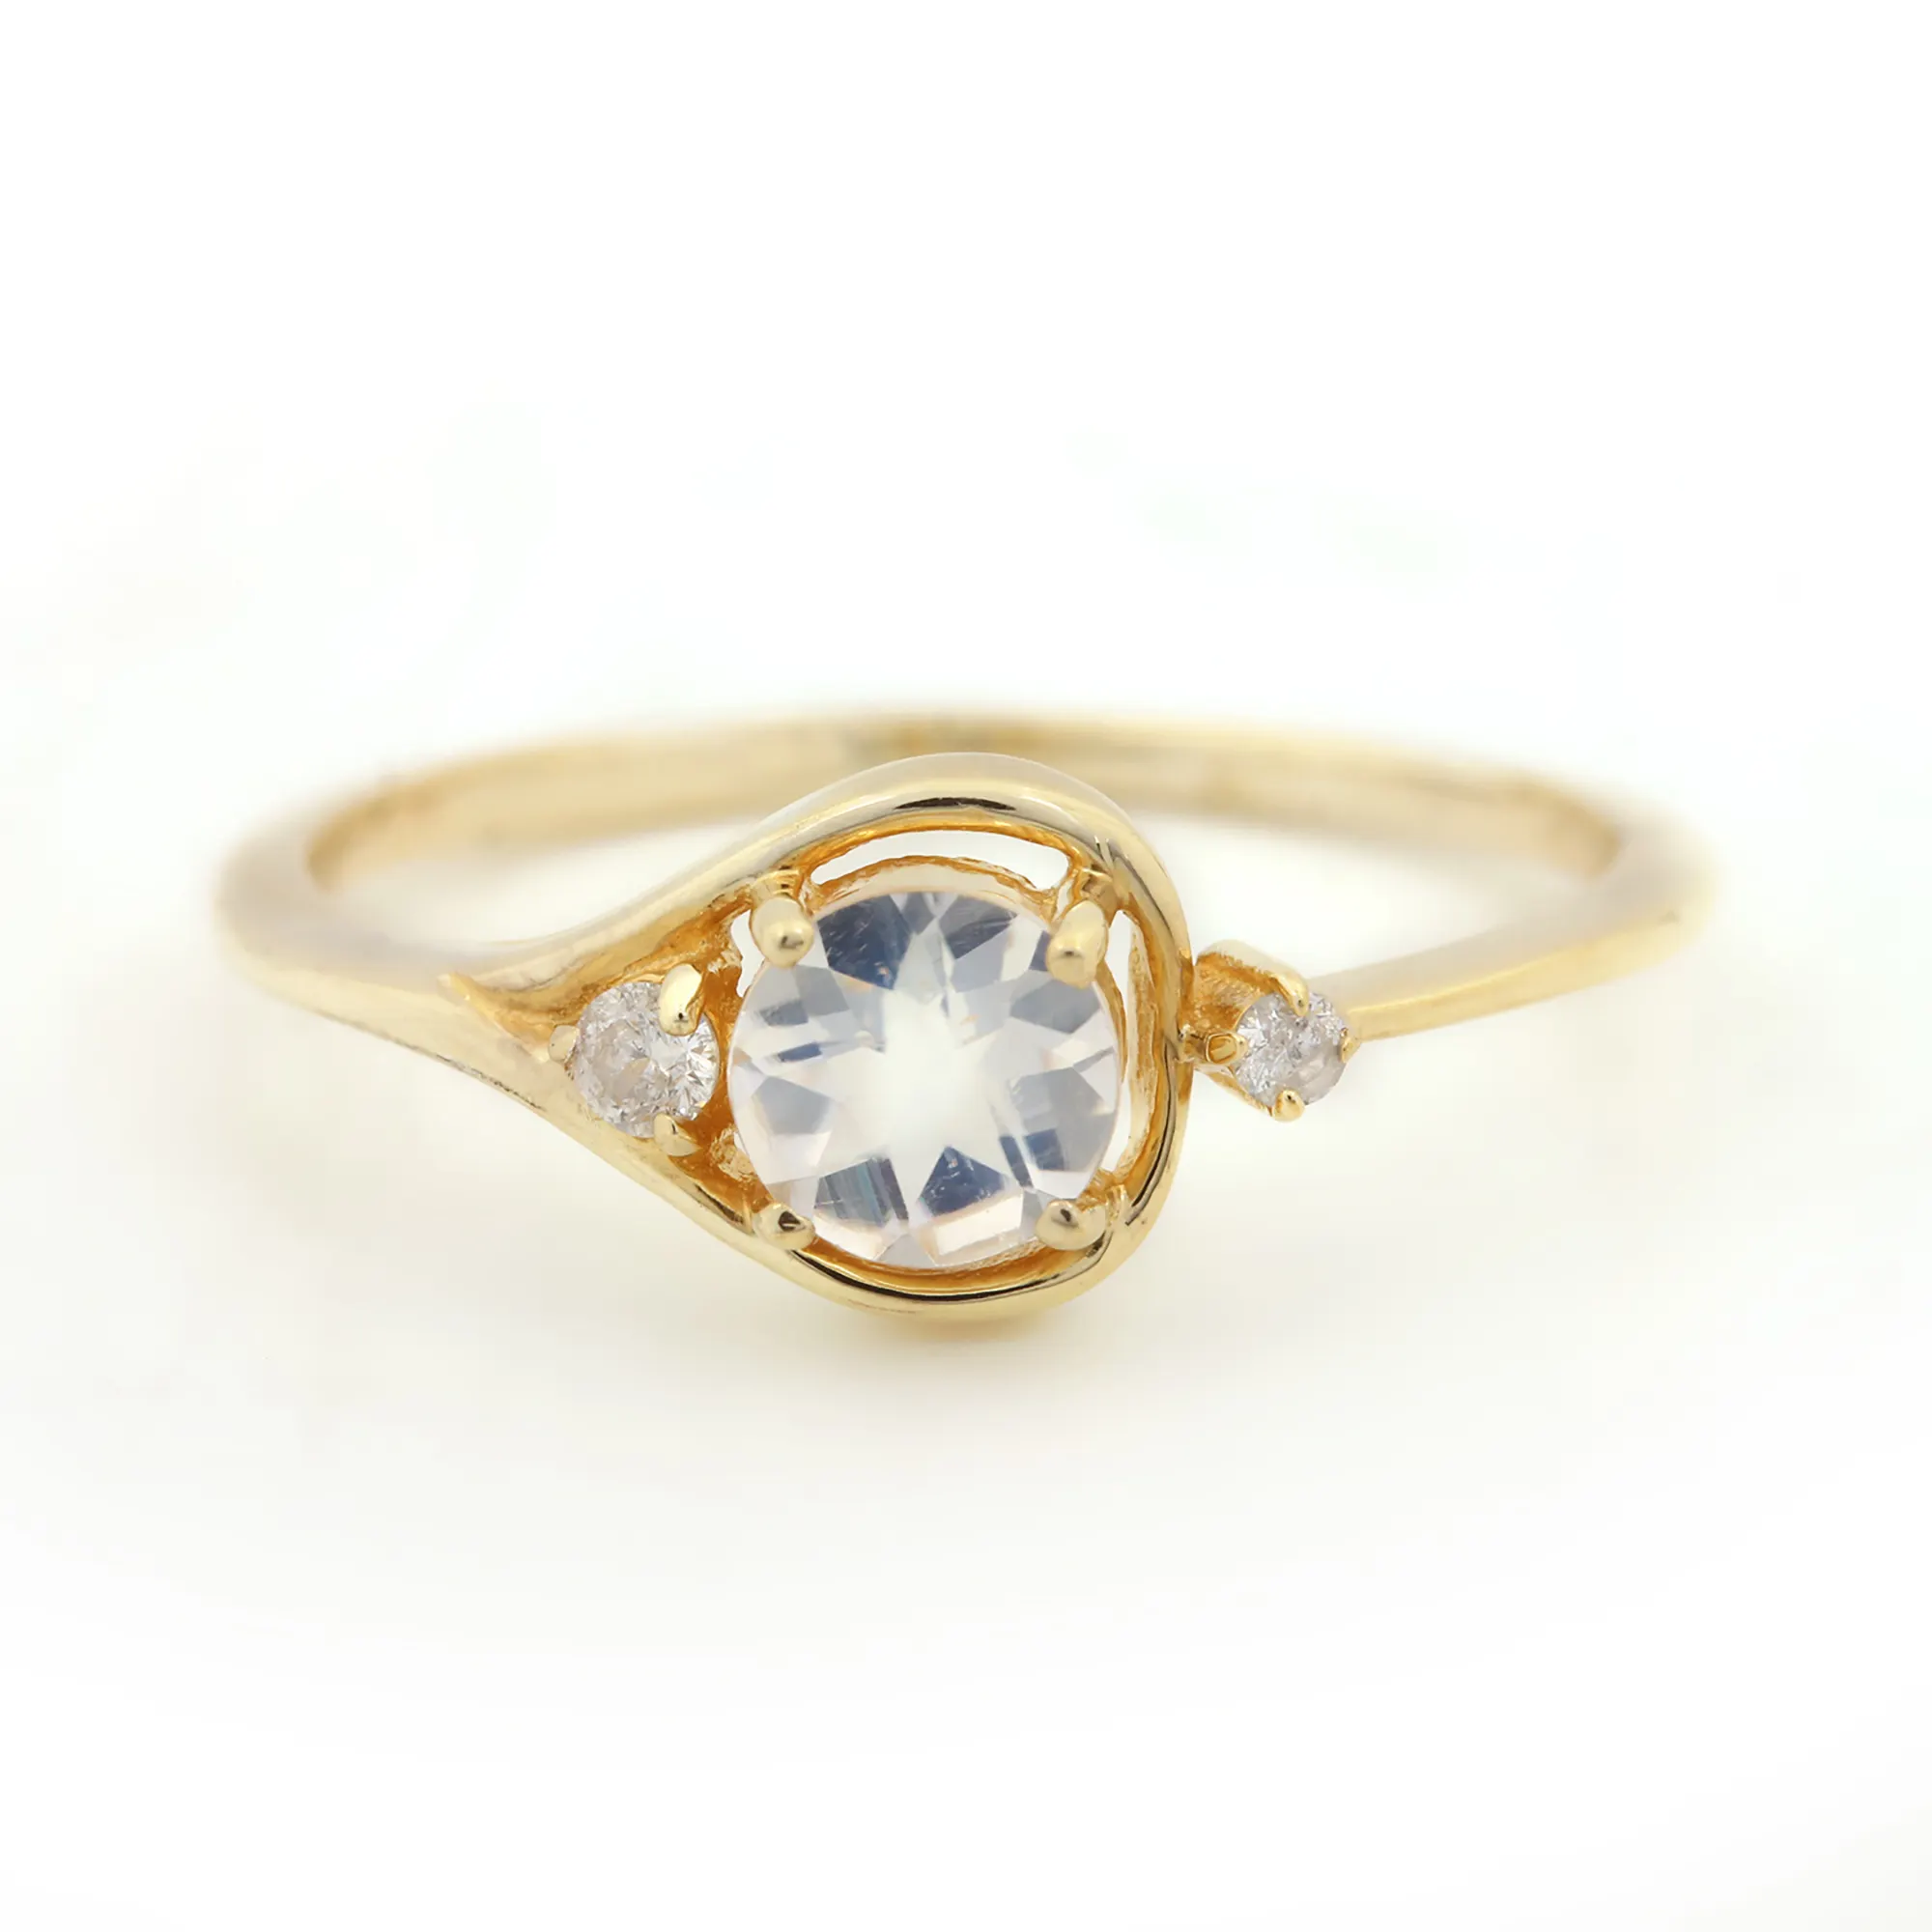 Indischer massiver 14 Karat Gelbgold Authentischer Diamant Regenbogen Mondstein Smart Ring für Damen Edelstein Diamant Feins chmuck Exporteure